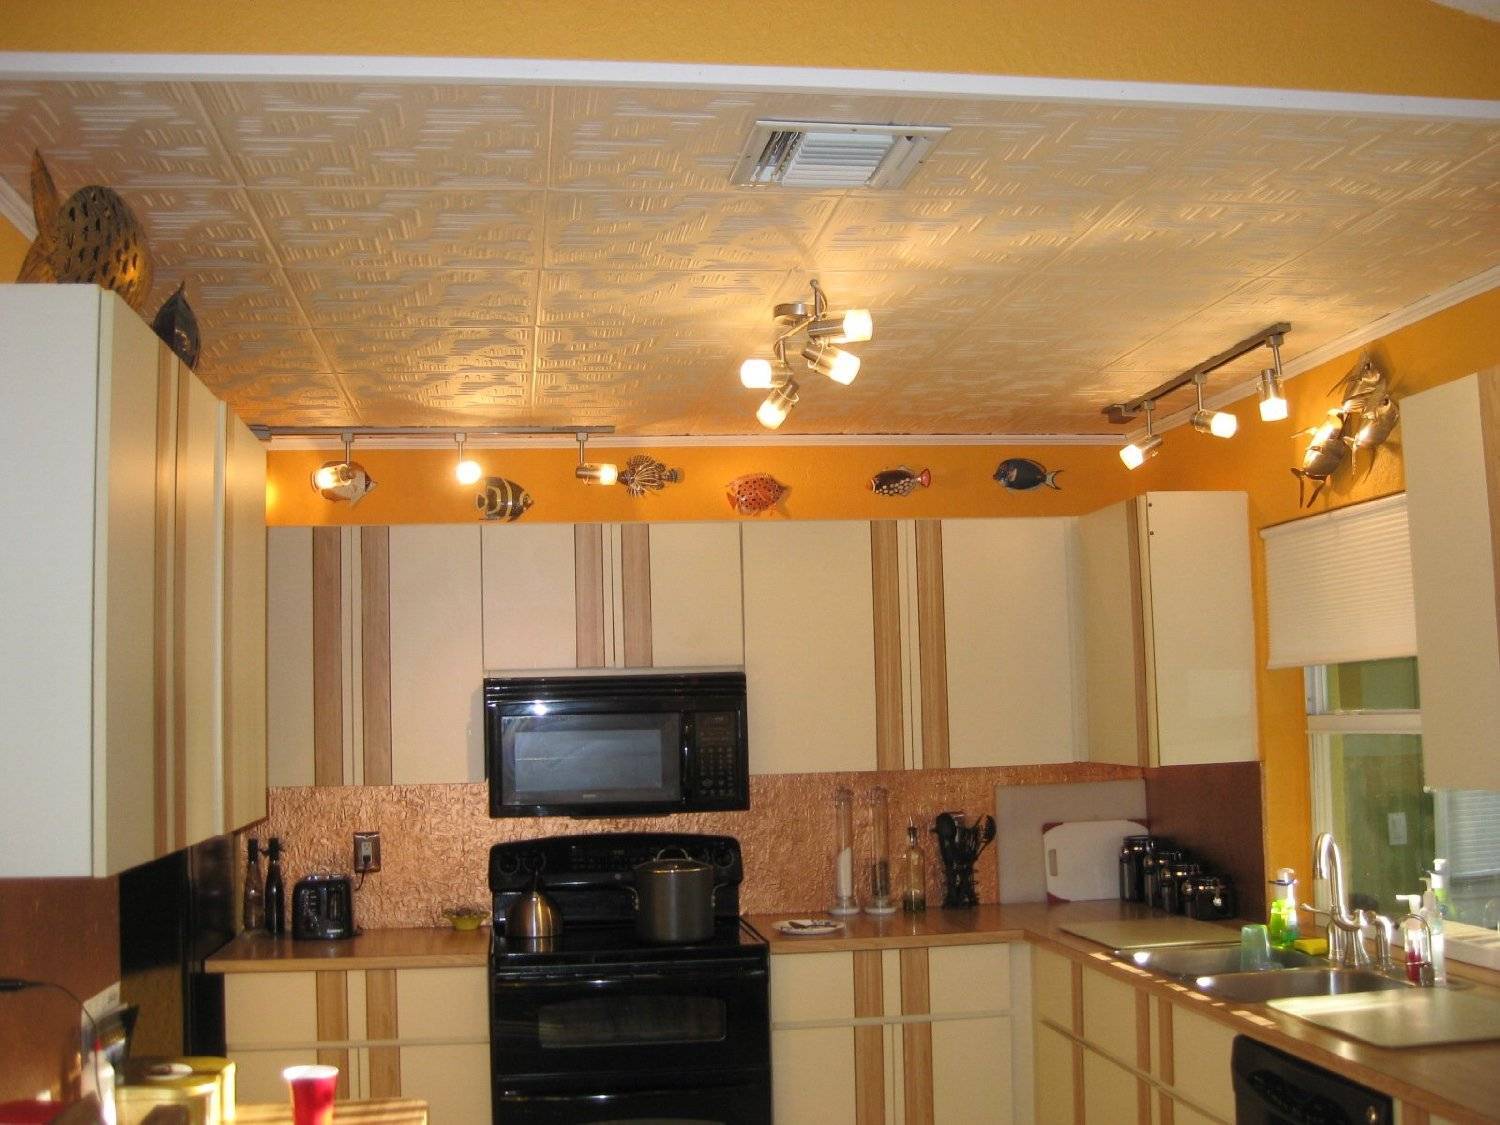 Потолок на кухне - лучшие варианты, фото, монтаж своими руками!